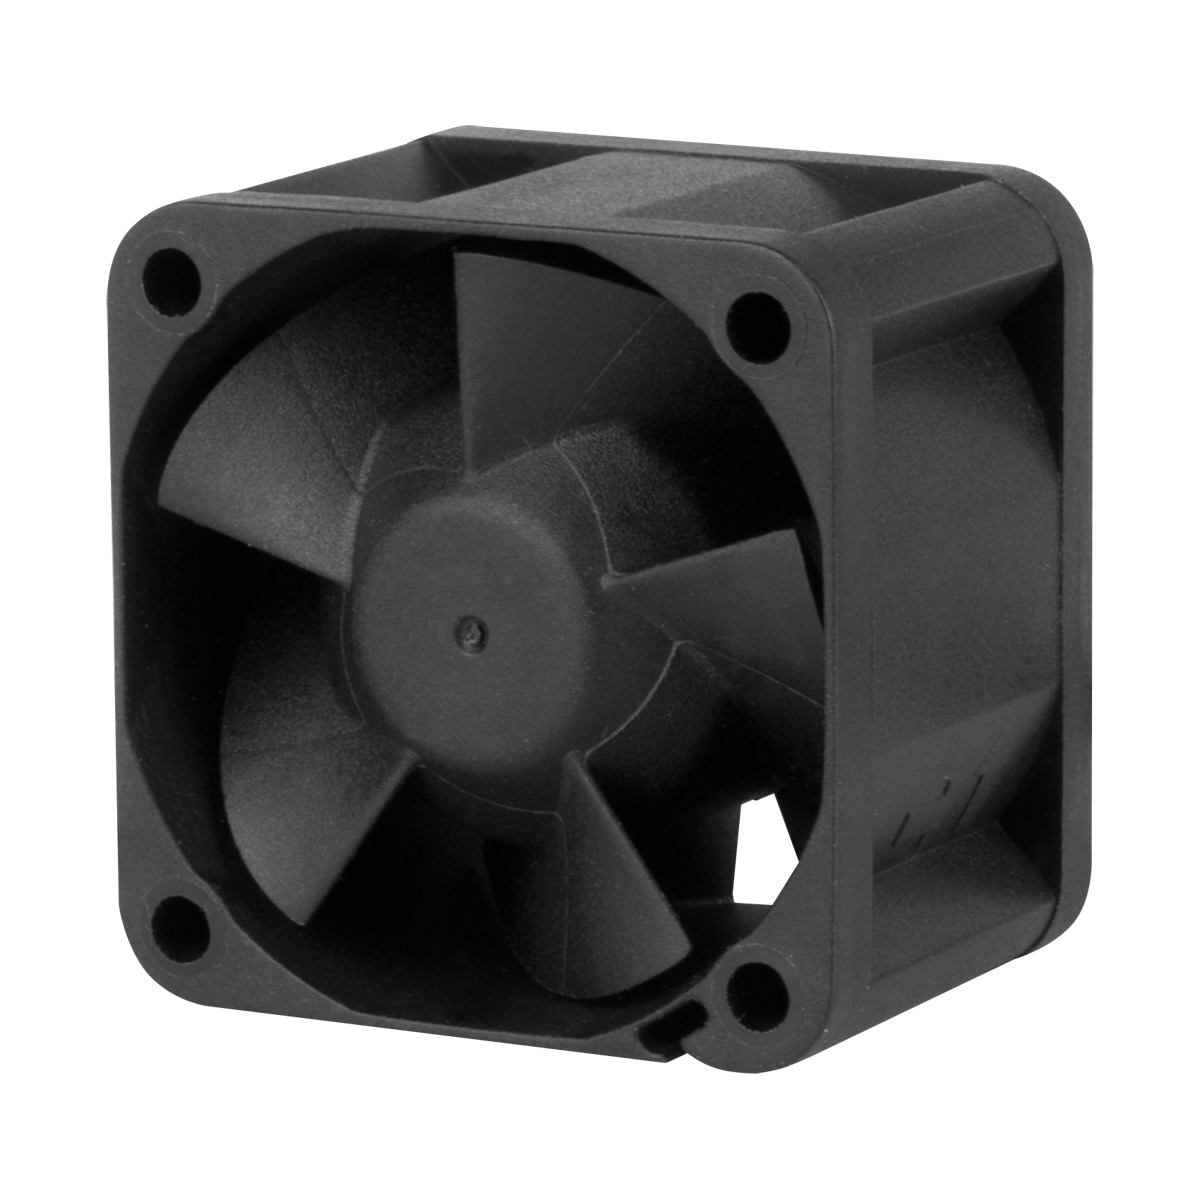 Cooling S4028-6K (40x28mm DC Fan for server) ACFAN00185A